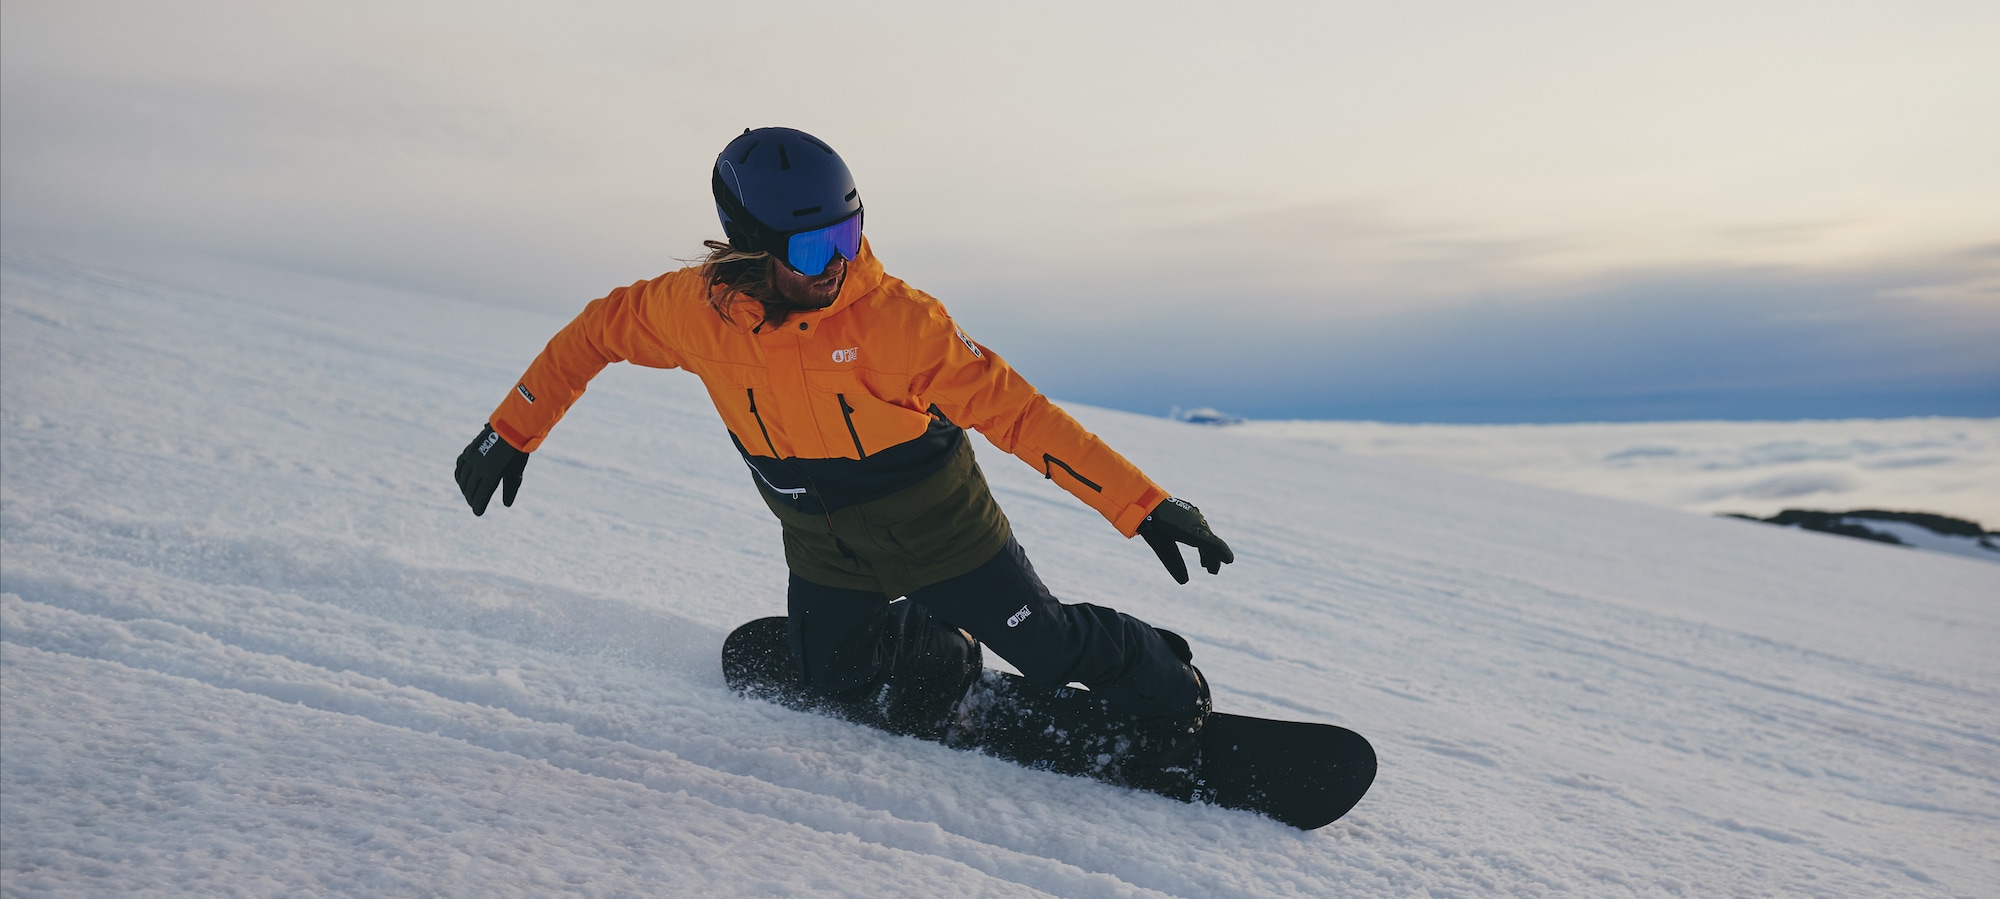 Toplo i sigurno u sezonu Snowboard jakne